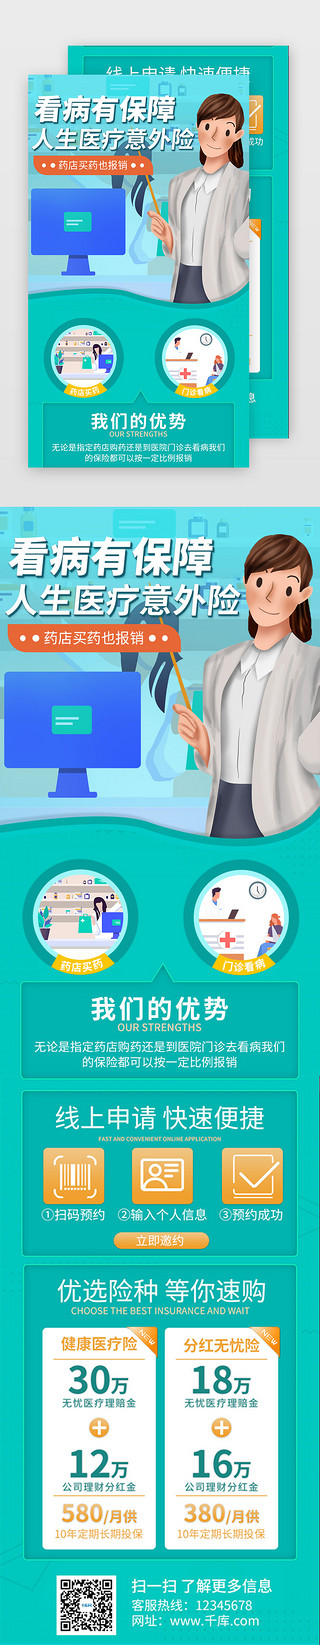 传承健康UI设计素材_绿色保险医疗健康促销活动介绍H5